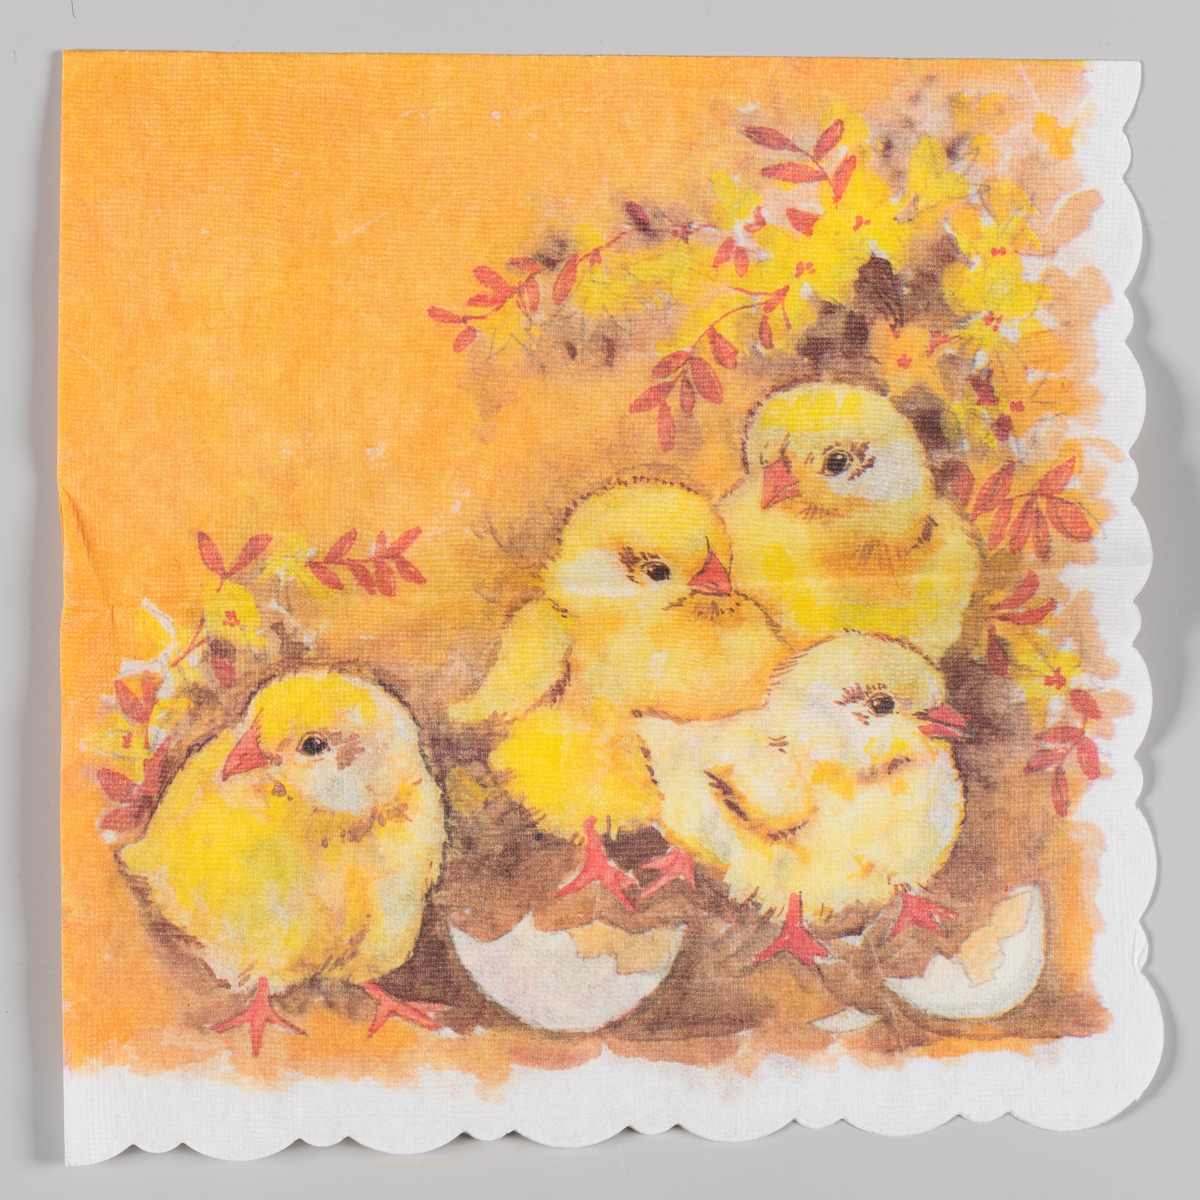 Fire kyllinger og skallet av et egg står i et landskpa med oransje og gule blomster og blader.